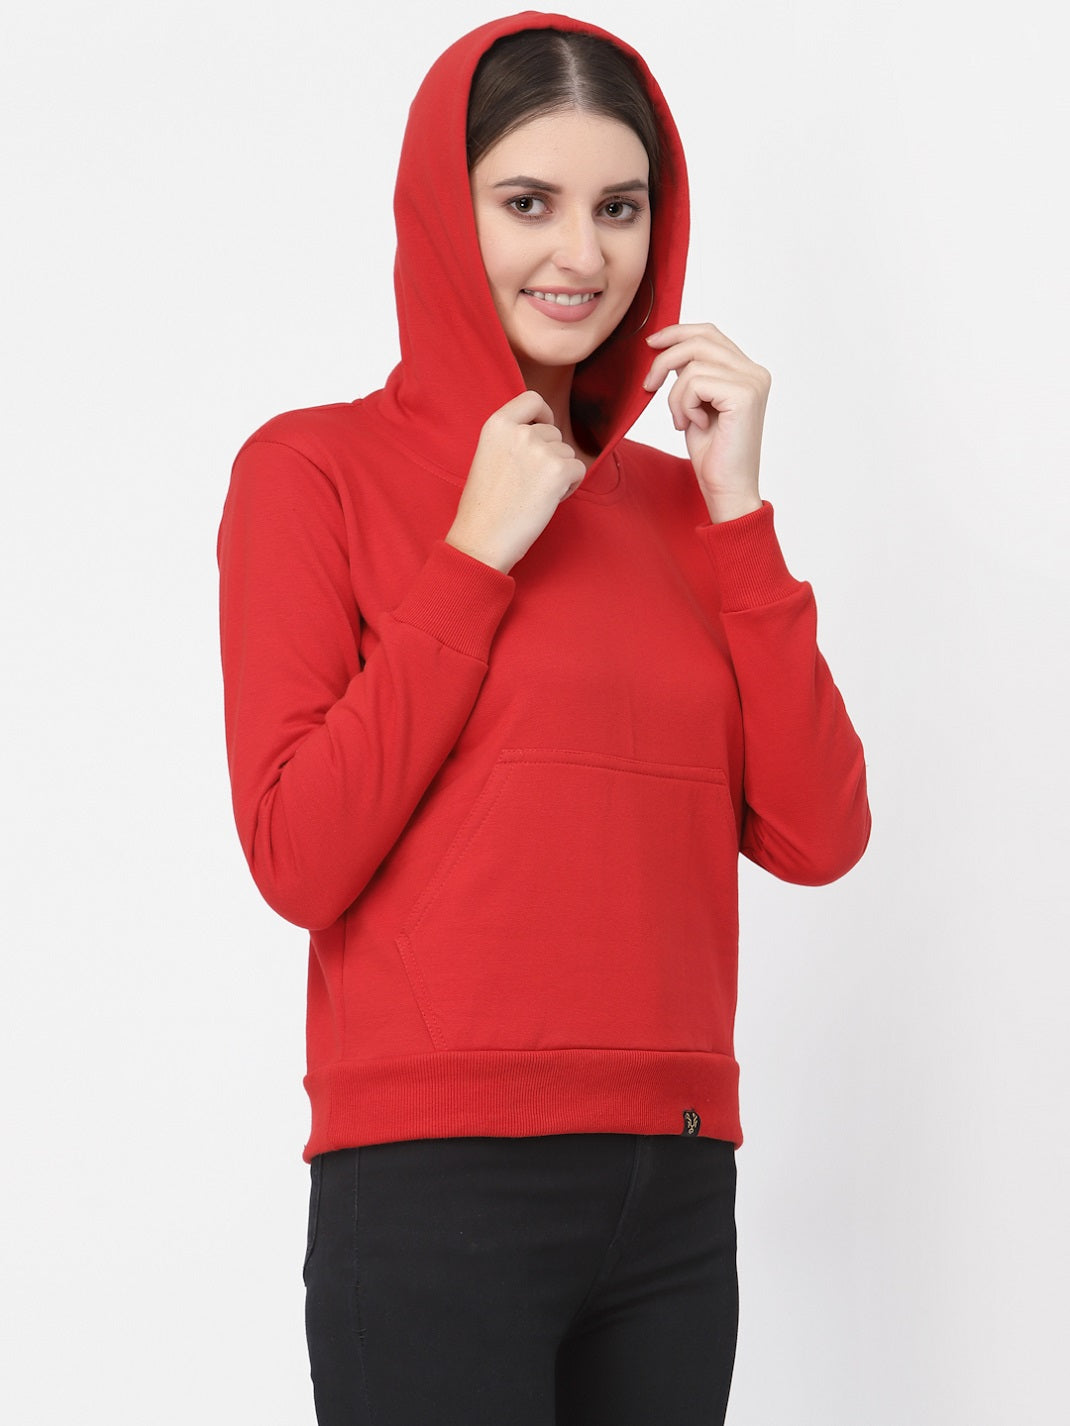 UZARUS Women's Cotton Fleece Latest Stylish Sweatshirt Hoodie